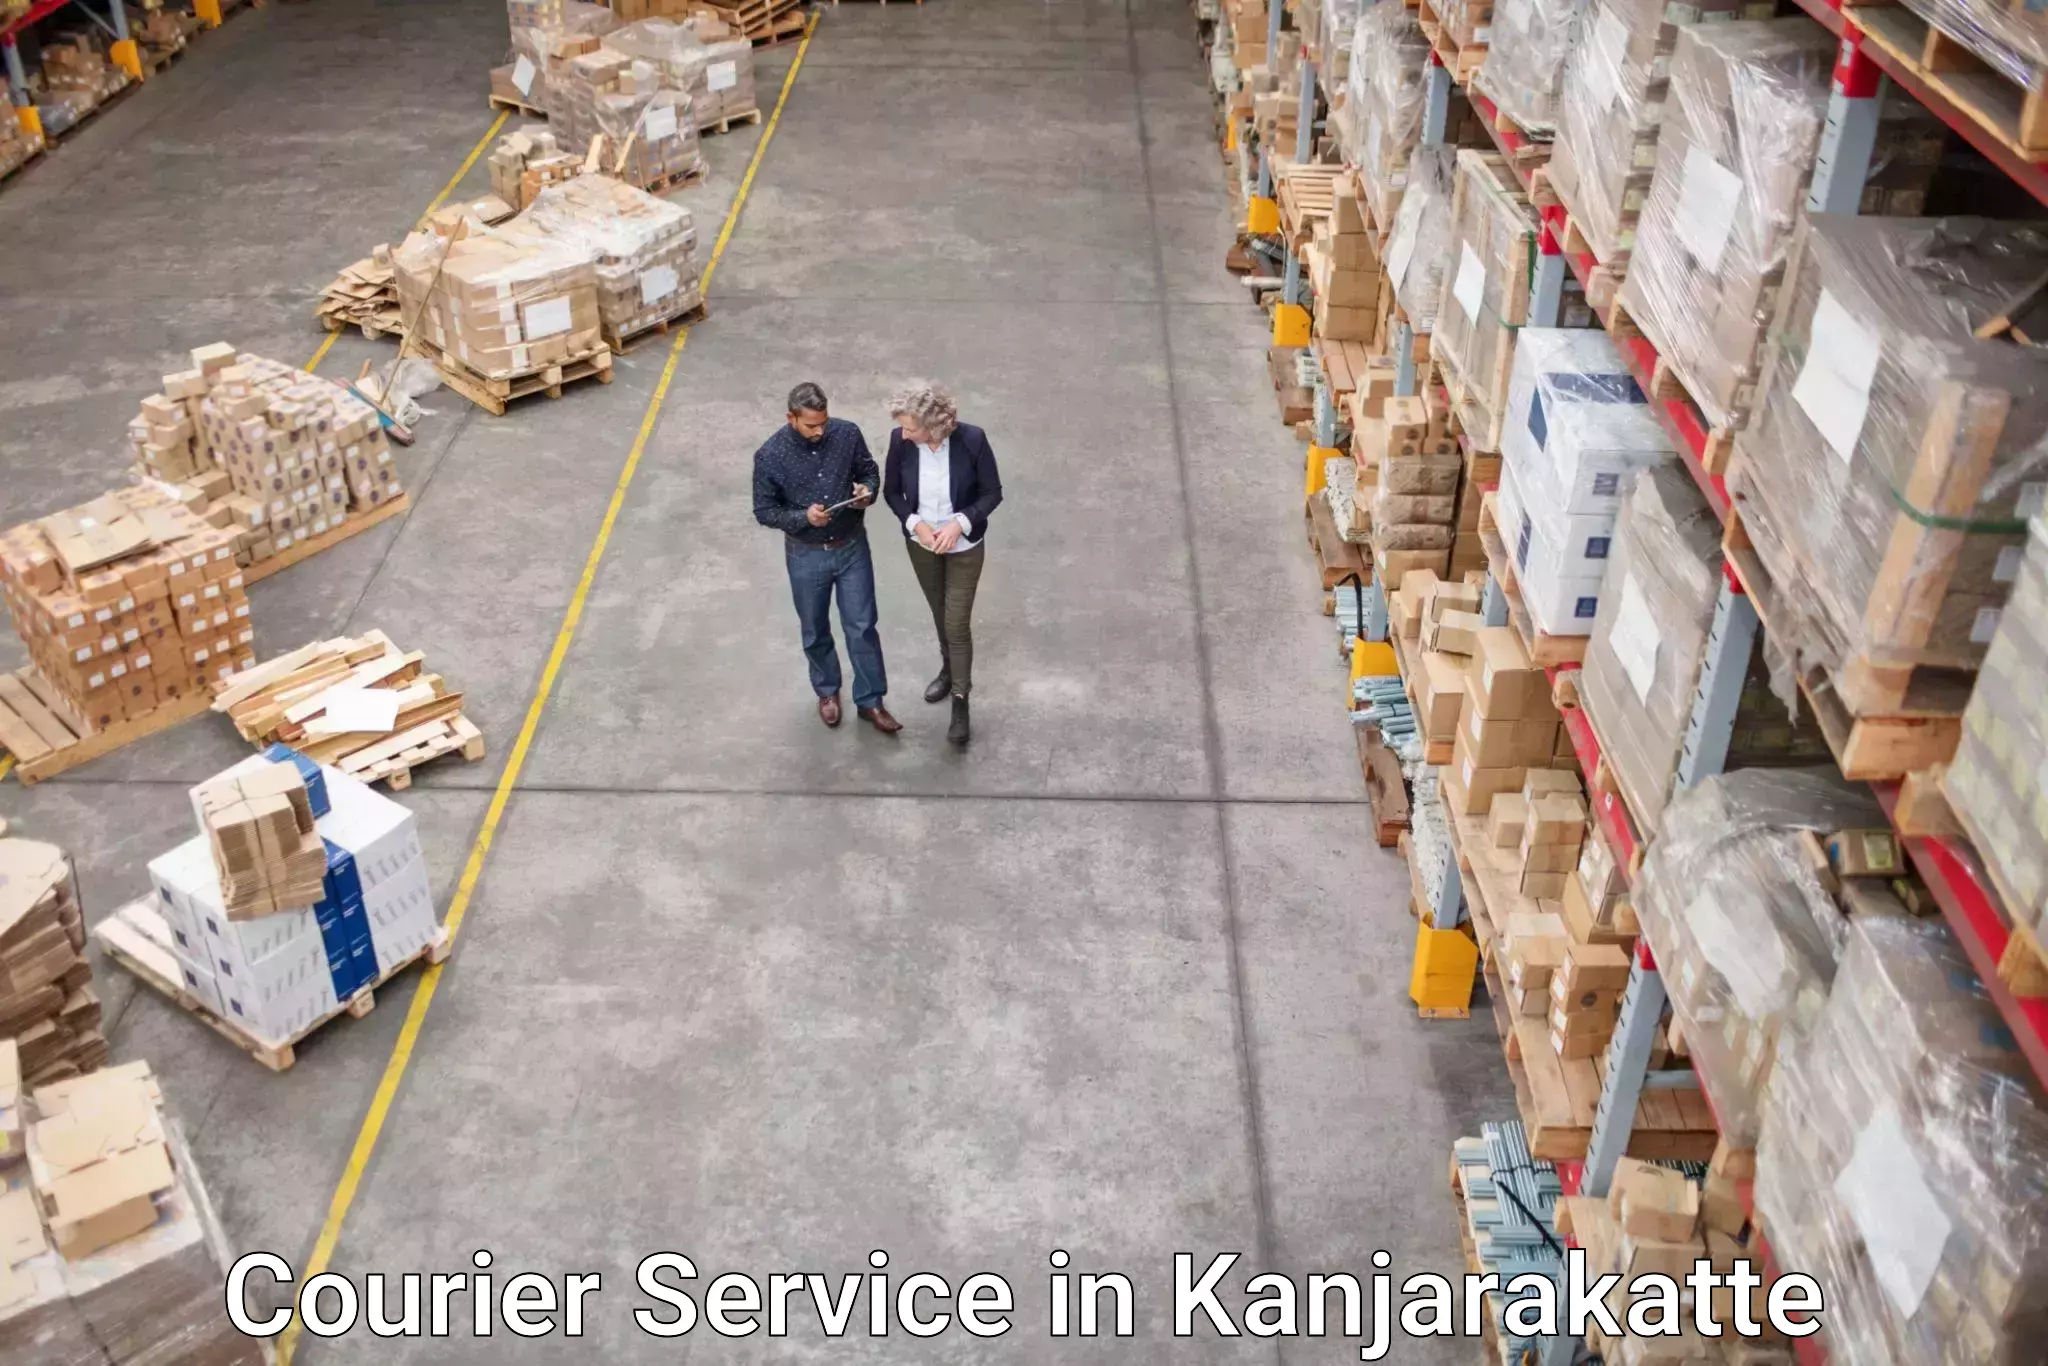 Personal parcel delivery in Kanjarakatte